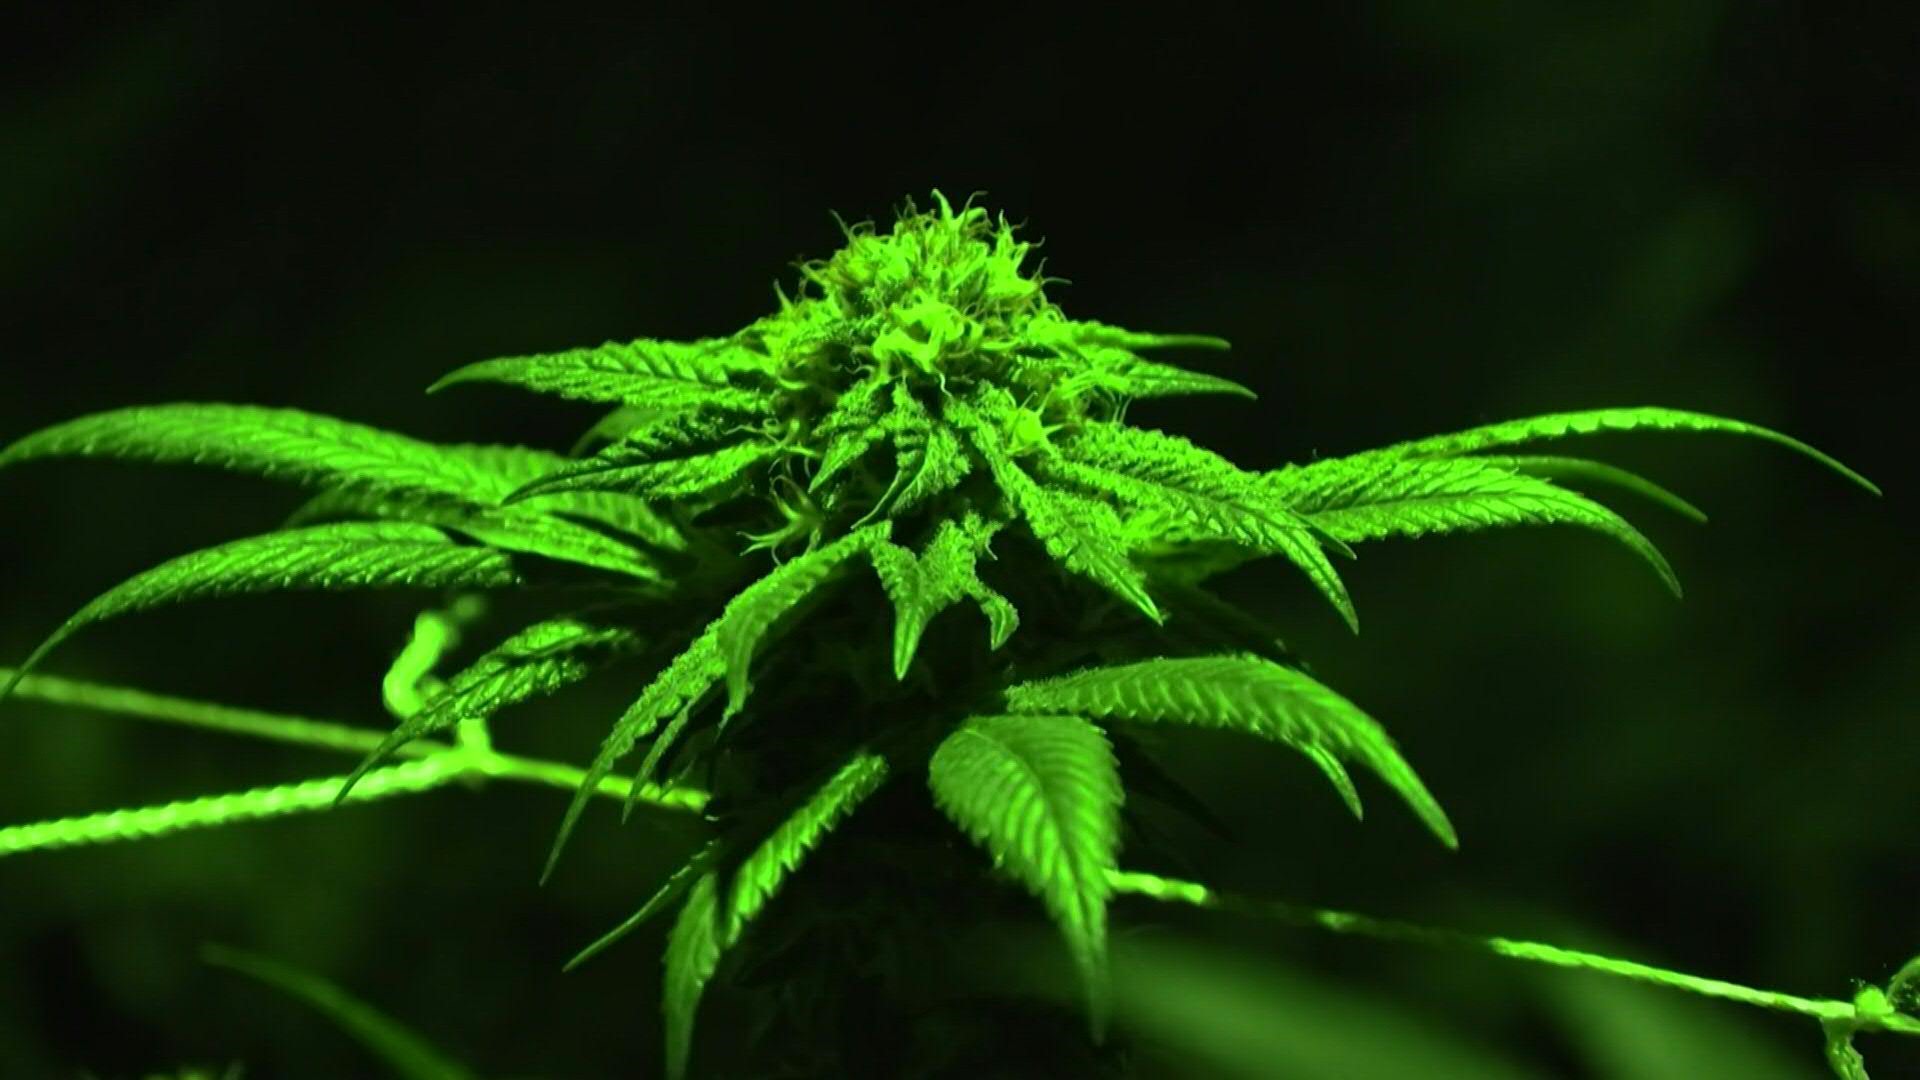 Fortalecer la industria del cannabis ayudaría a la política de drogas,  asegura gremio de cultivadores - Infobae